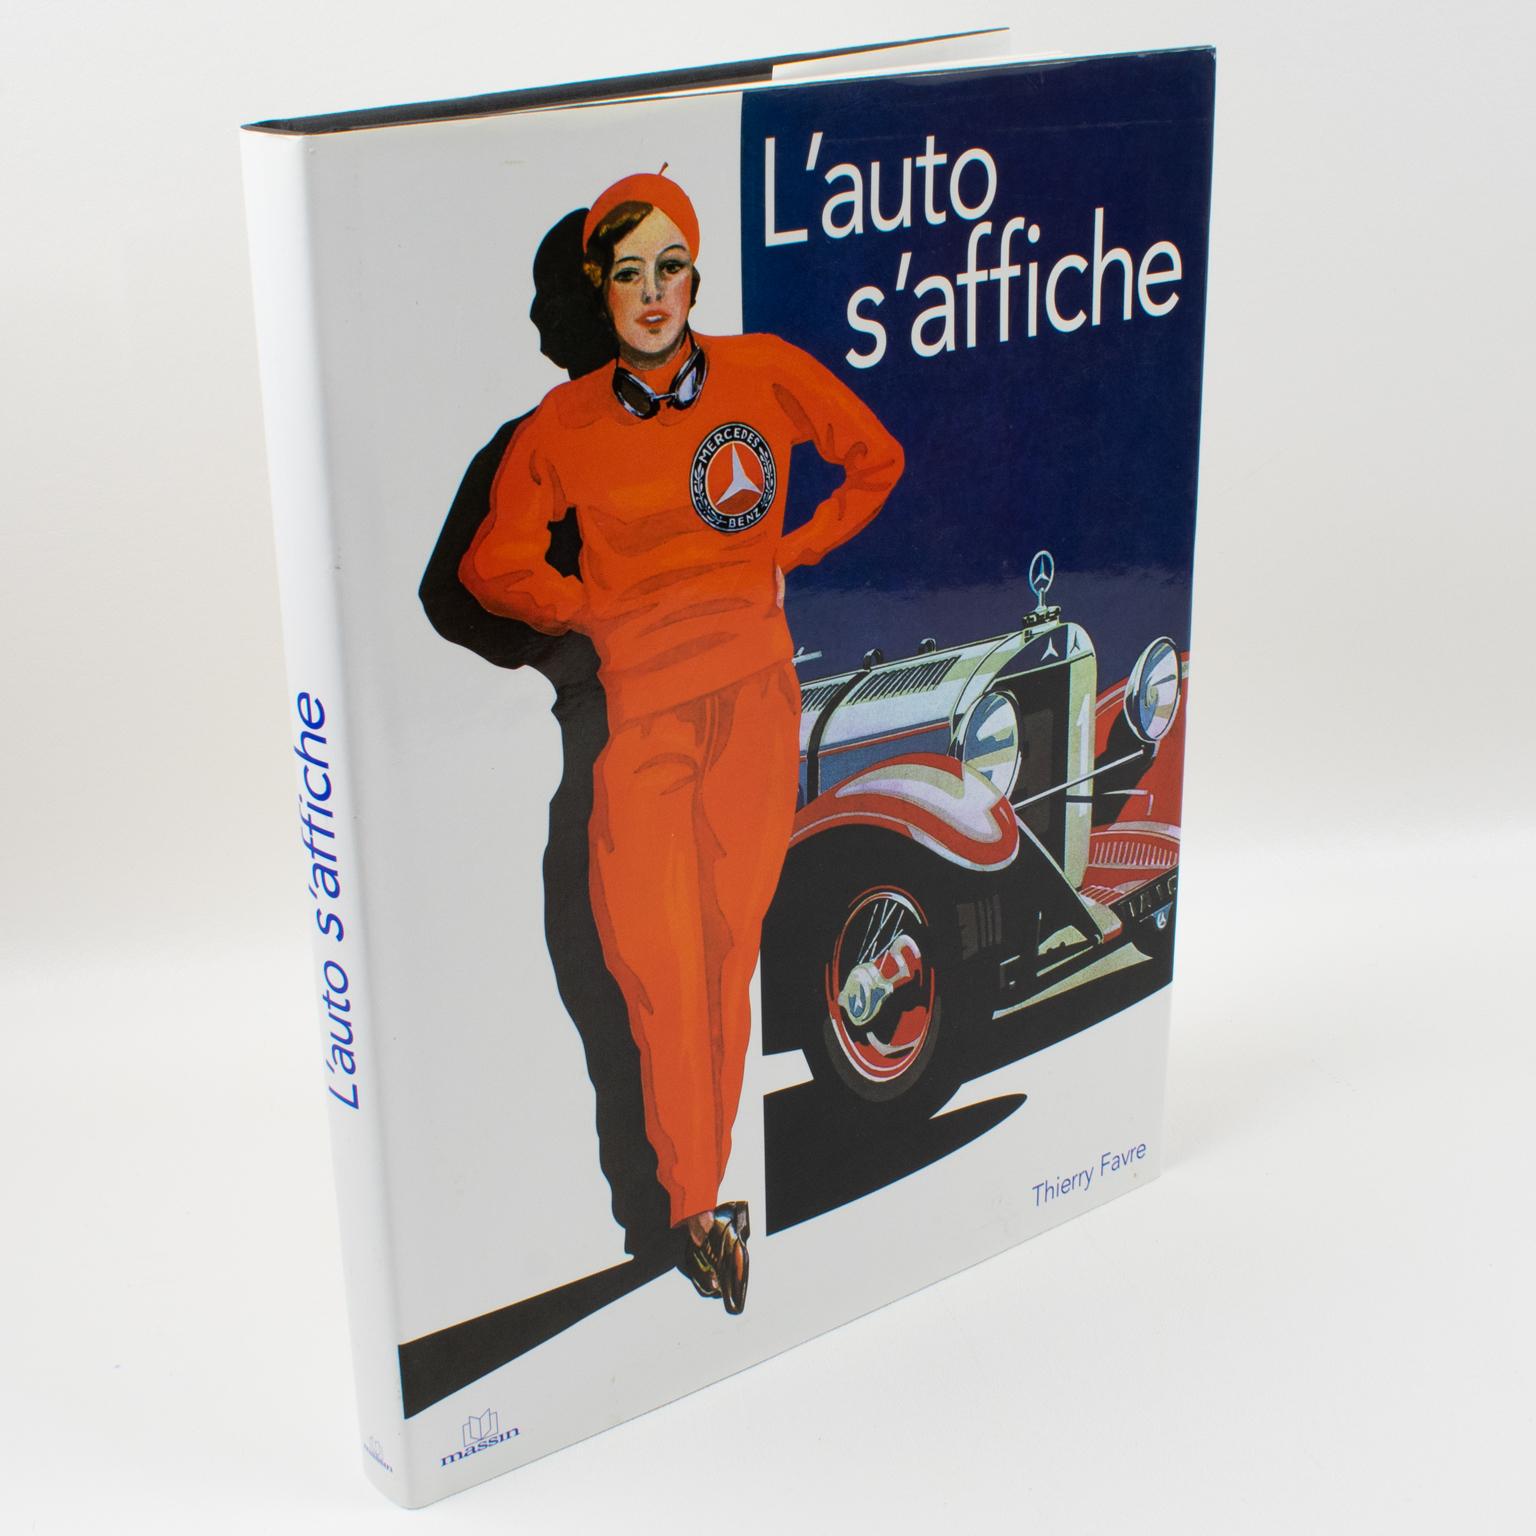 L'Auto s'affiche, livre français de Thierry Favre, 2007.
Préfacé par Louis Schweitzer, cet ouvrage dévoile une formidable collection d'affiches graphiques illustrant l'histoire de l'automobile. Cette rétrospective permet de comprendre les tendances